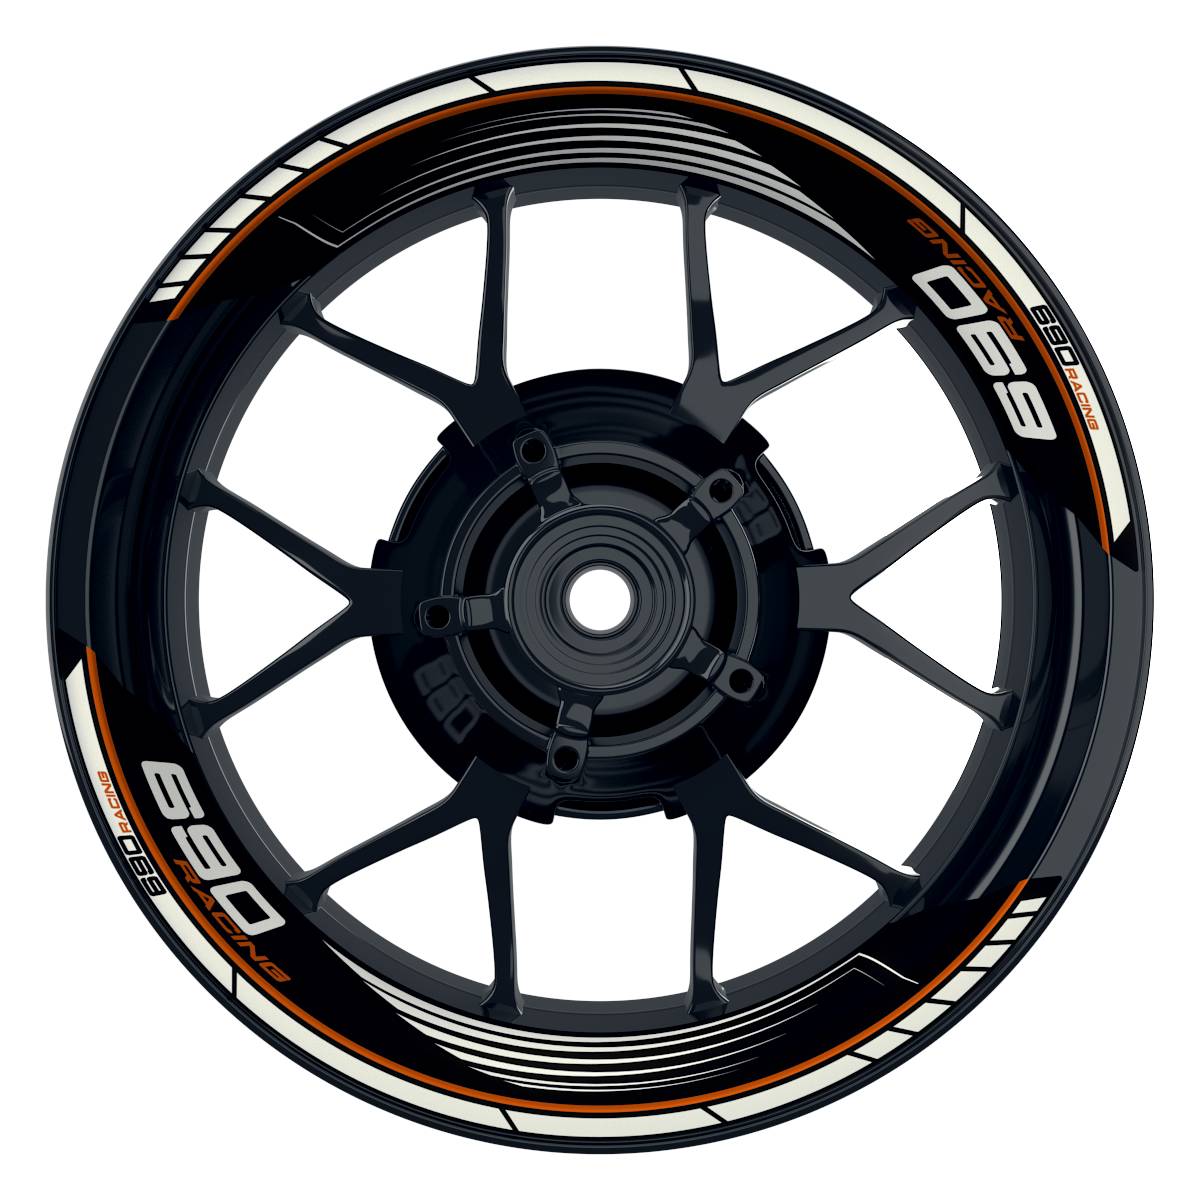 KTM Racing 690 SAW schwarz orange Frontansicht